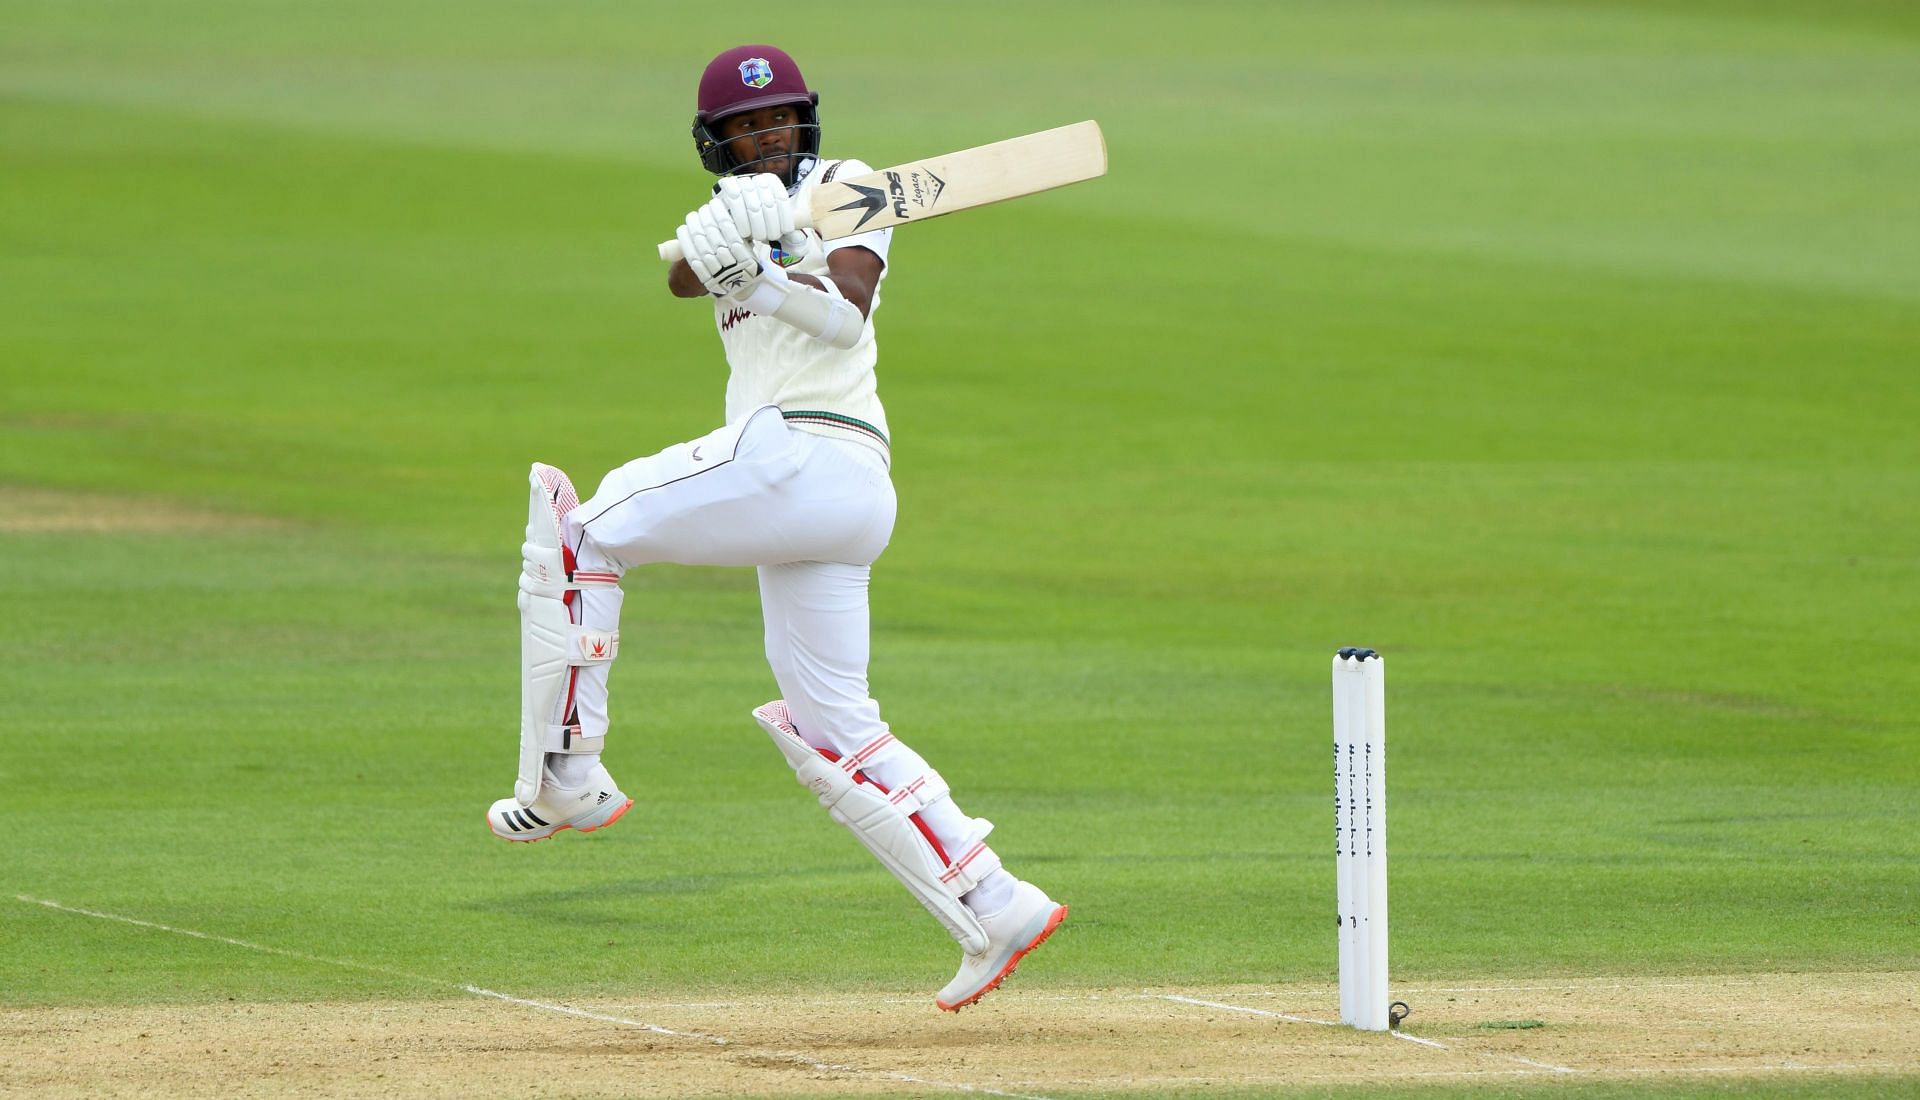 Kraigg Brathwaite in action in the England vs West Indies: Day 3 - First Test